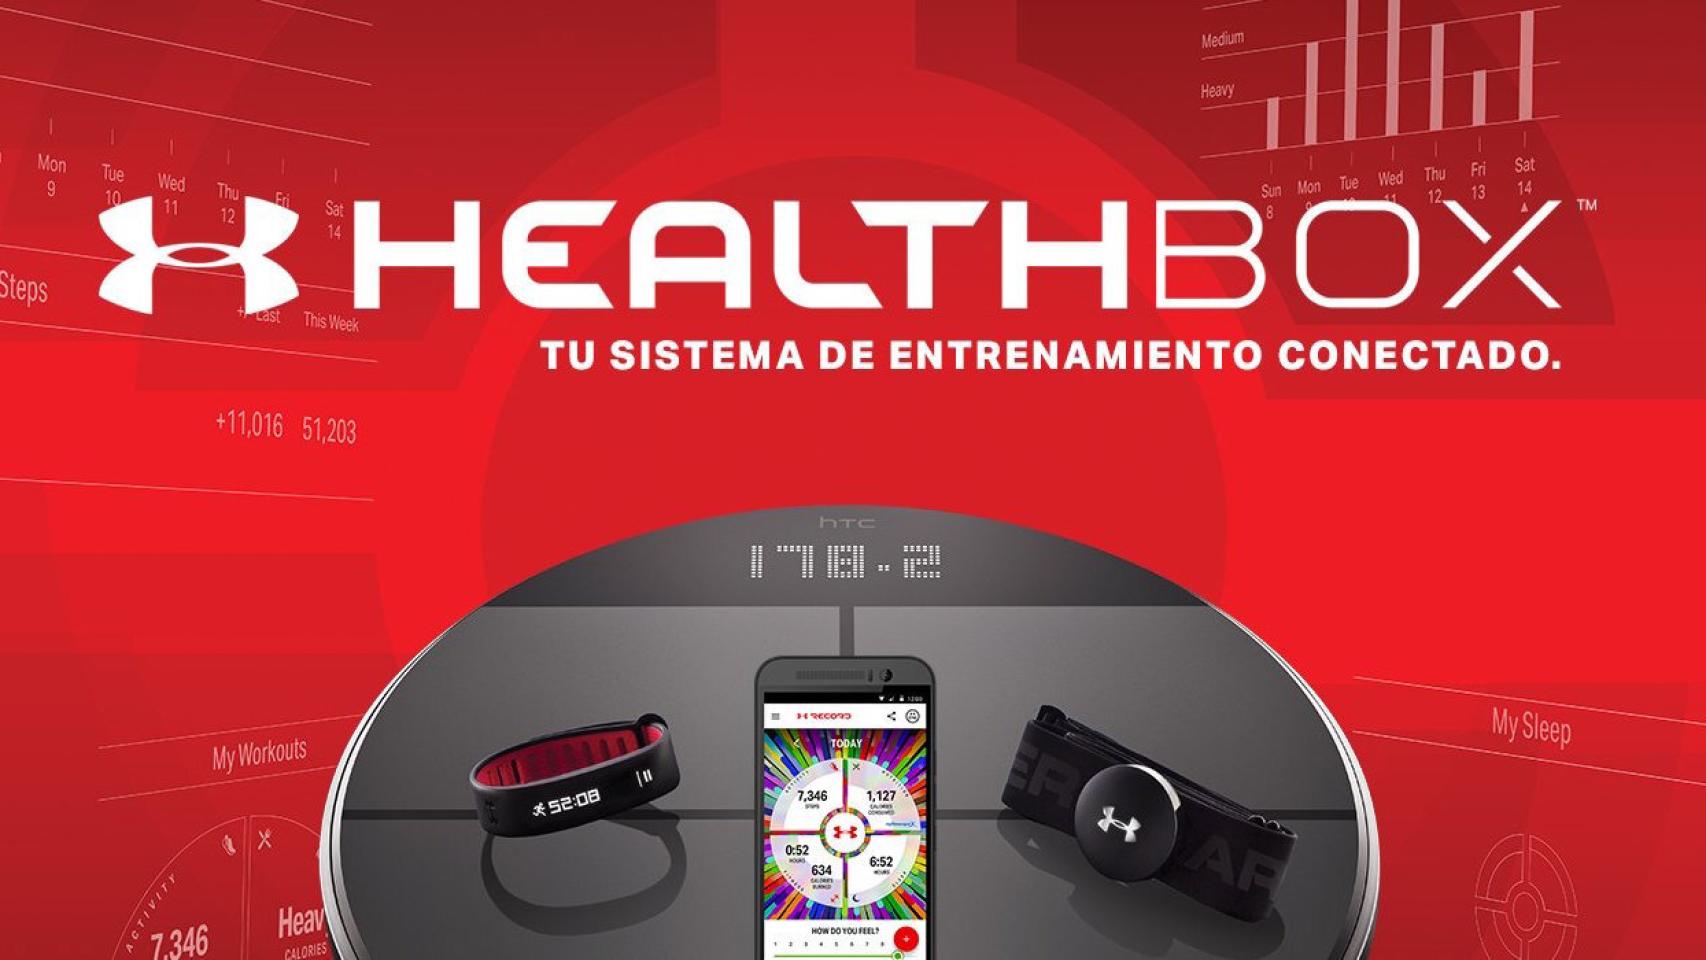 Under Healthbox, el sistema entrenamiento conectado completo